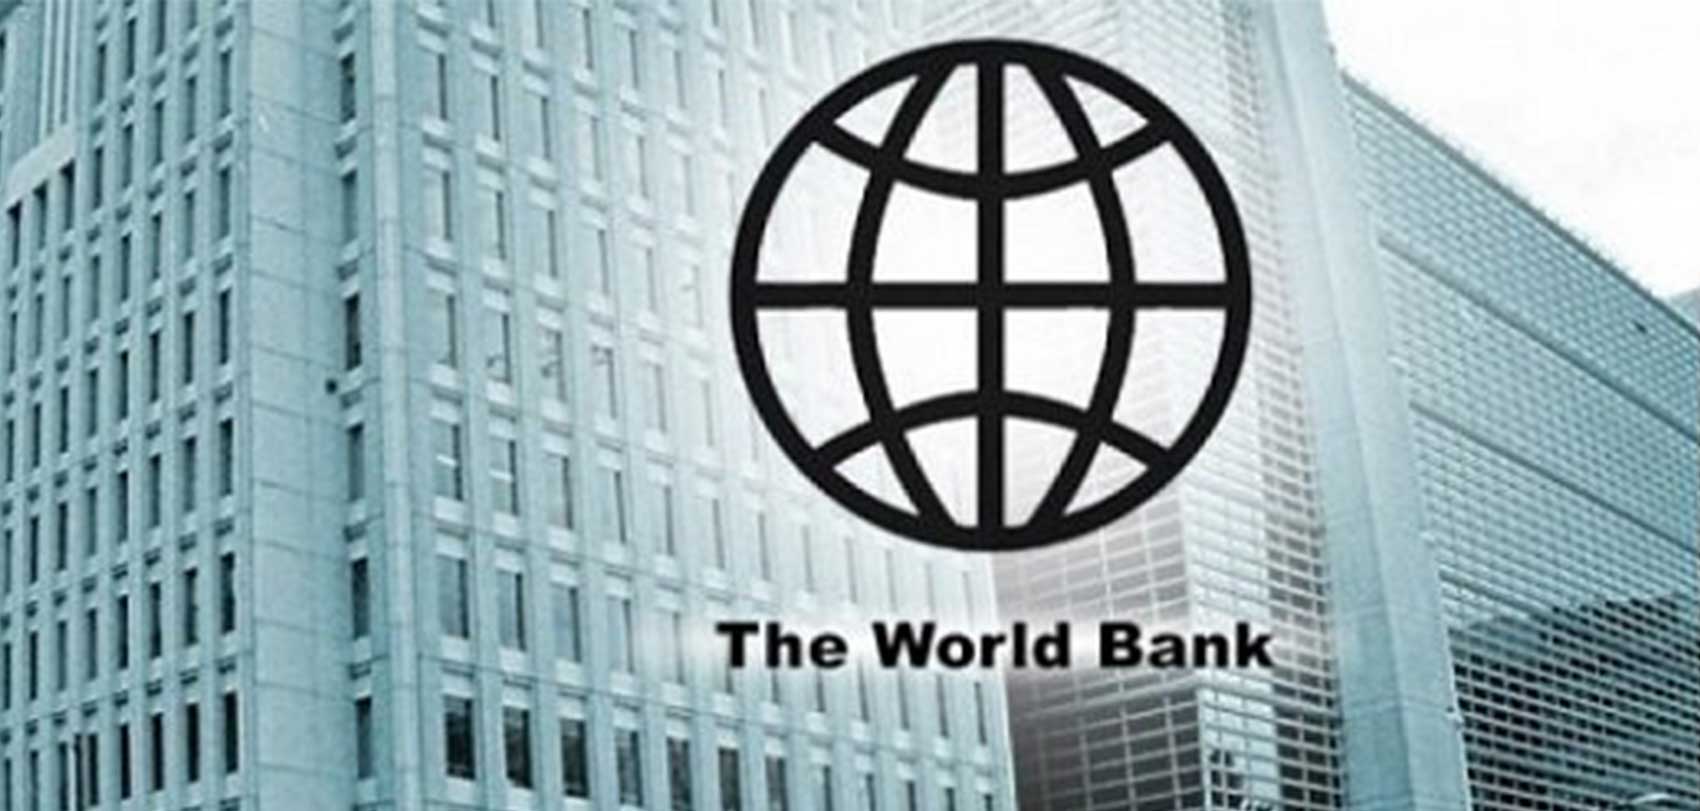 नेपालको समावेशी विकासका लागि विश्व बैंकबाट १८ अर्ब १५ करोड प्राप्त हुँदै